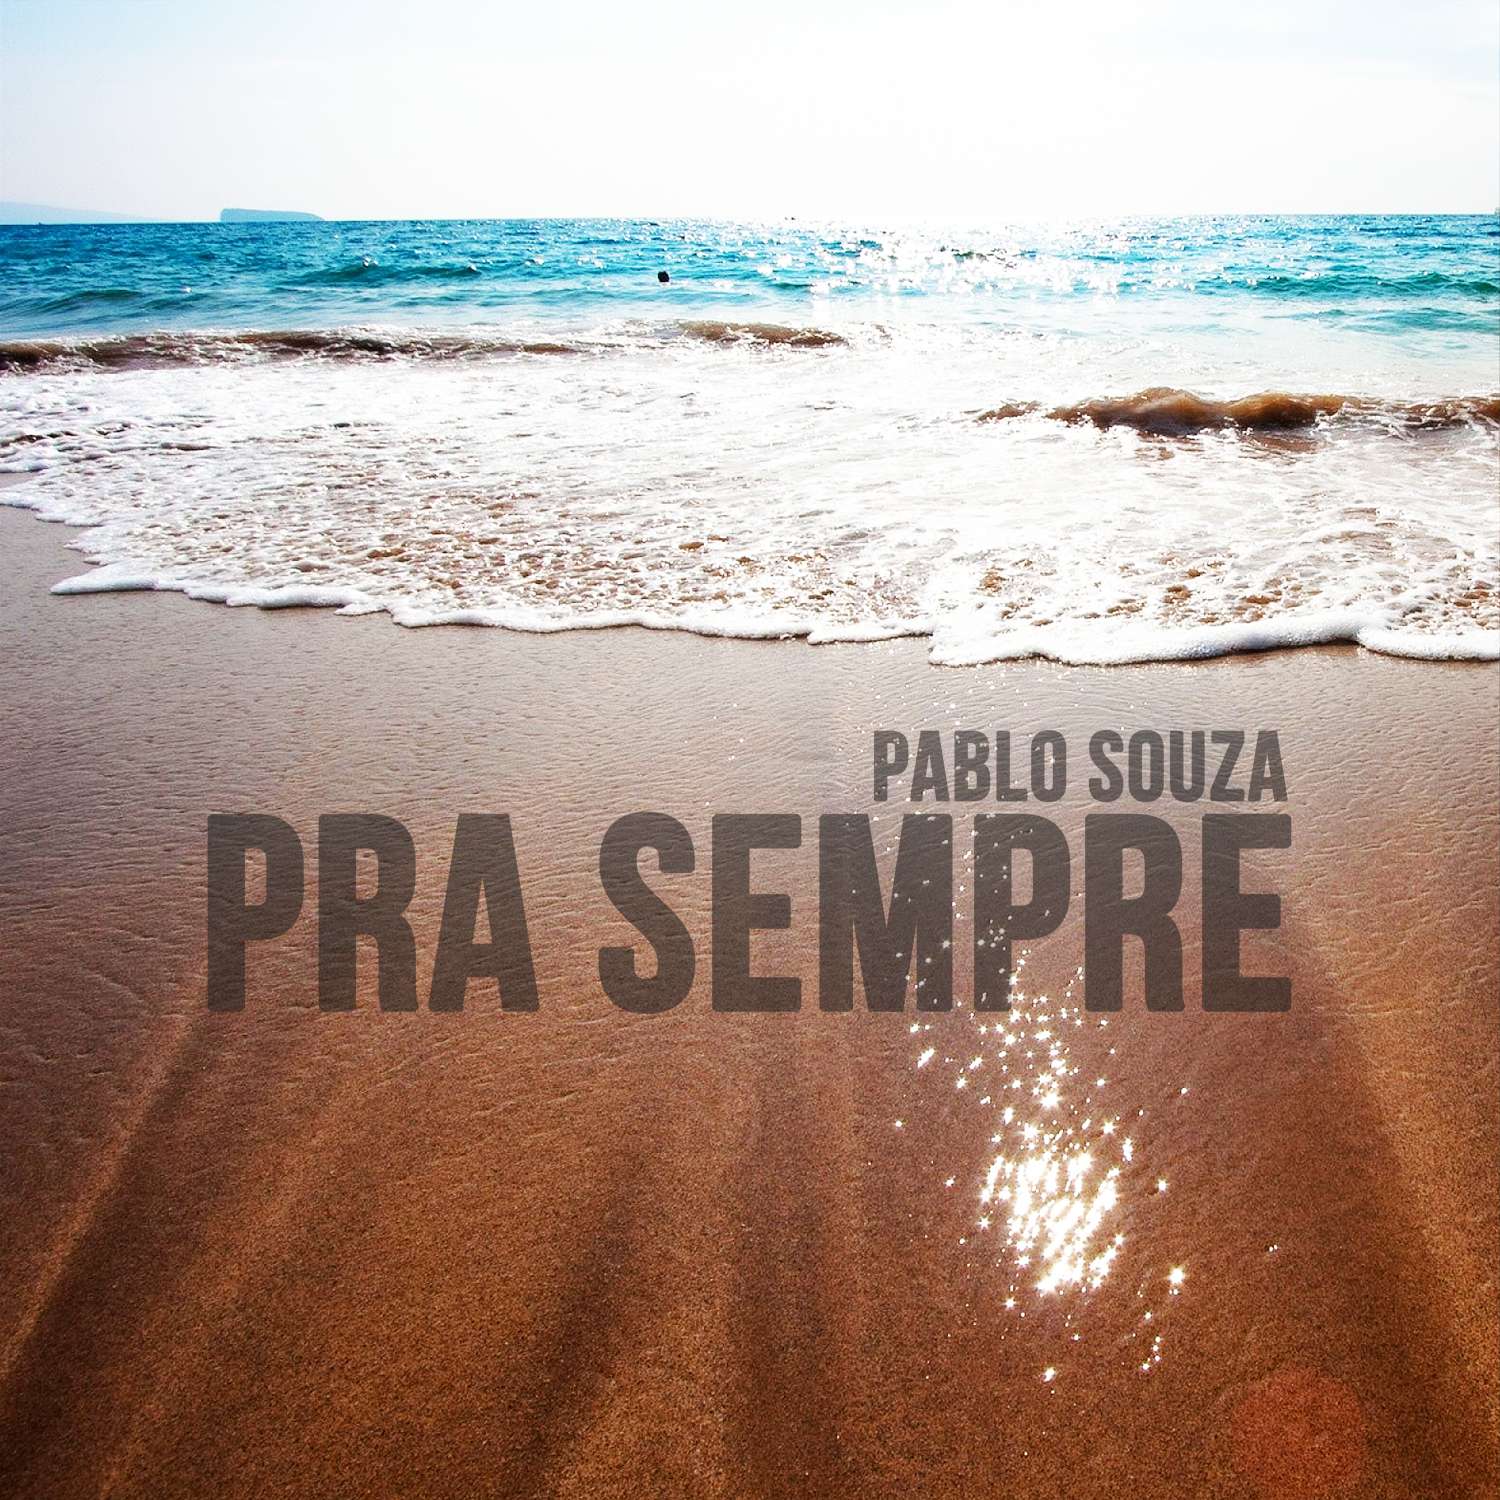 Pablo Souza cantor e compositor gravação de Pra sempre, uma parceria com Emerson Urso com arranjos de Danilo Alves